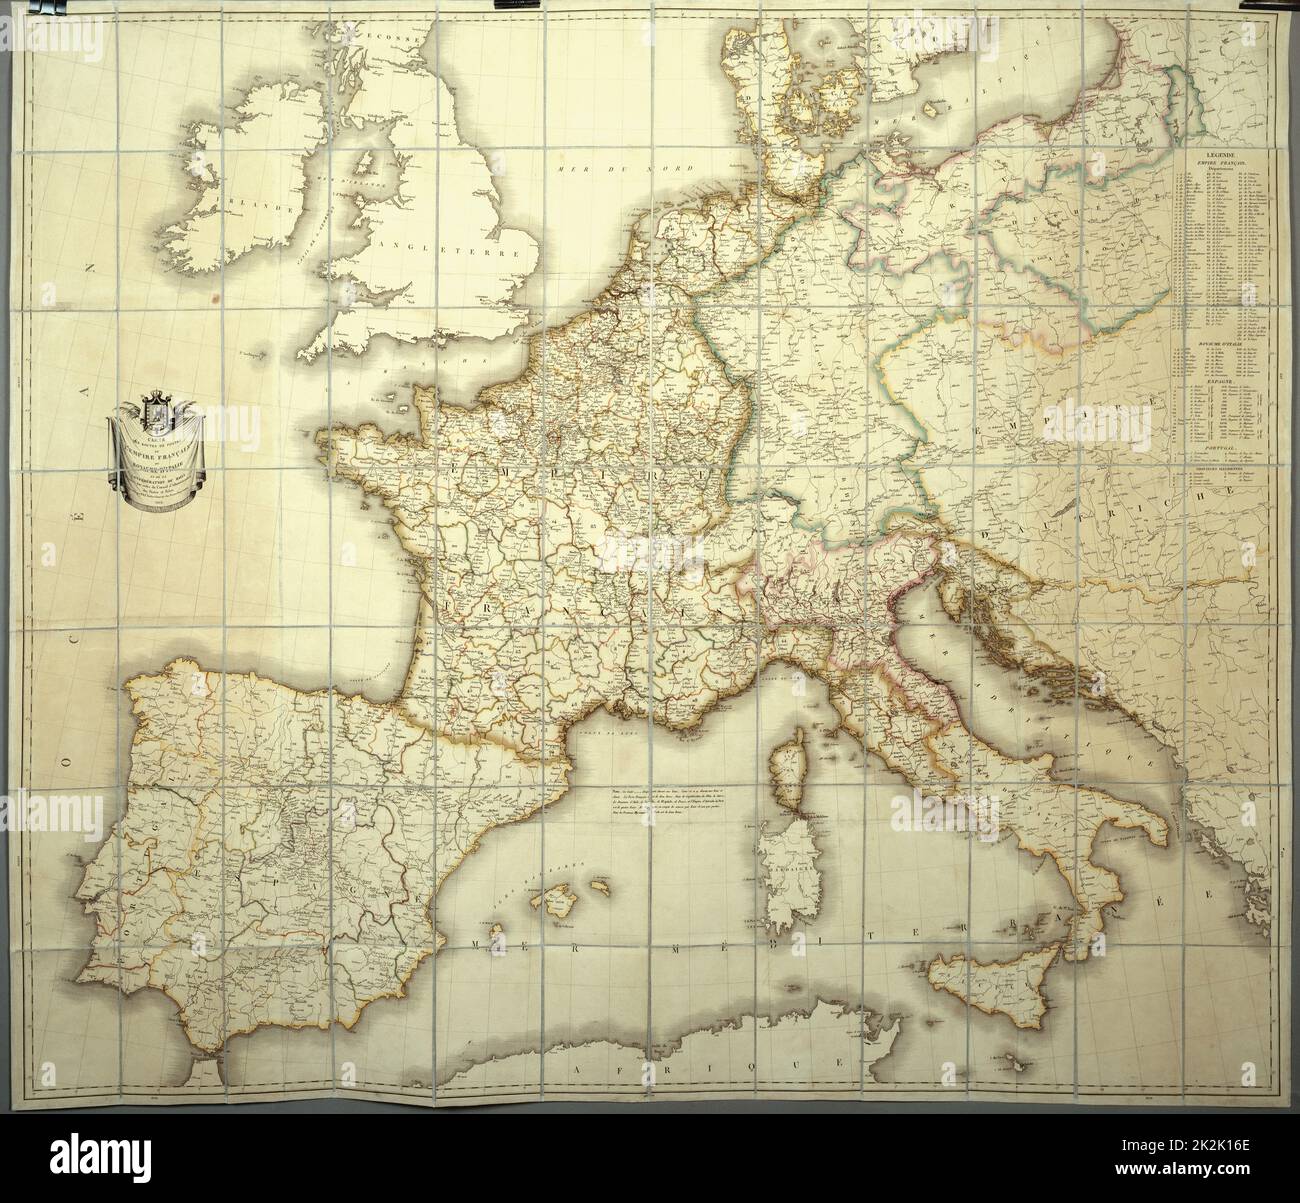 Karte des französischen Kaiserreichs in 1812 Personale Kopie des Imperators für seine topographische Studie Papier mit Seide ausgekleidet (110 x 80 cm) Eine Kiste enthält die Karte (siehe PJC03041 CHA288) Stockfoto